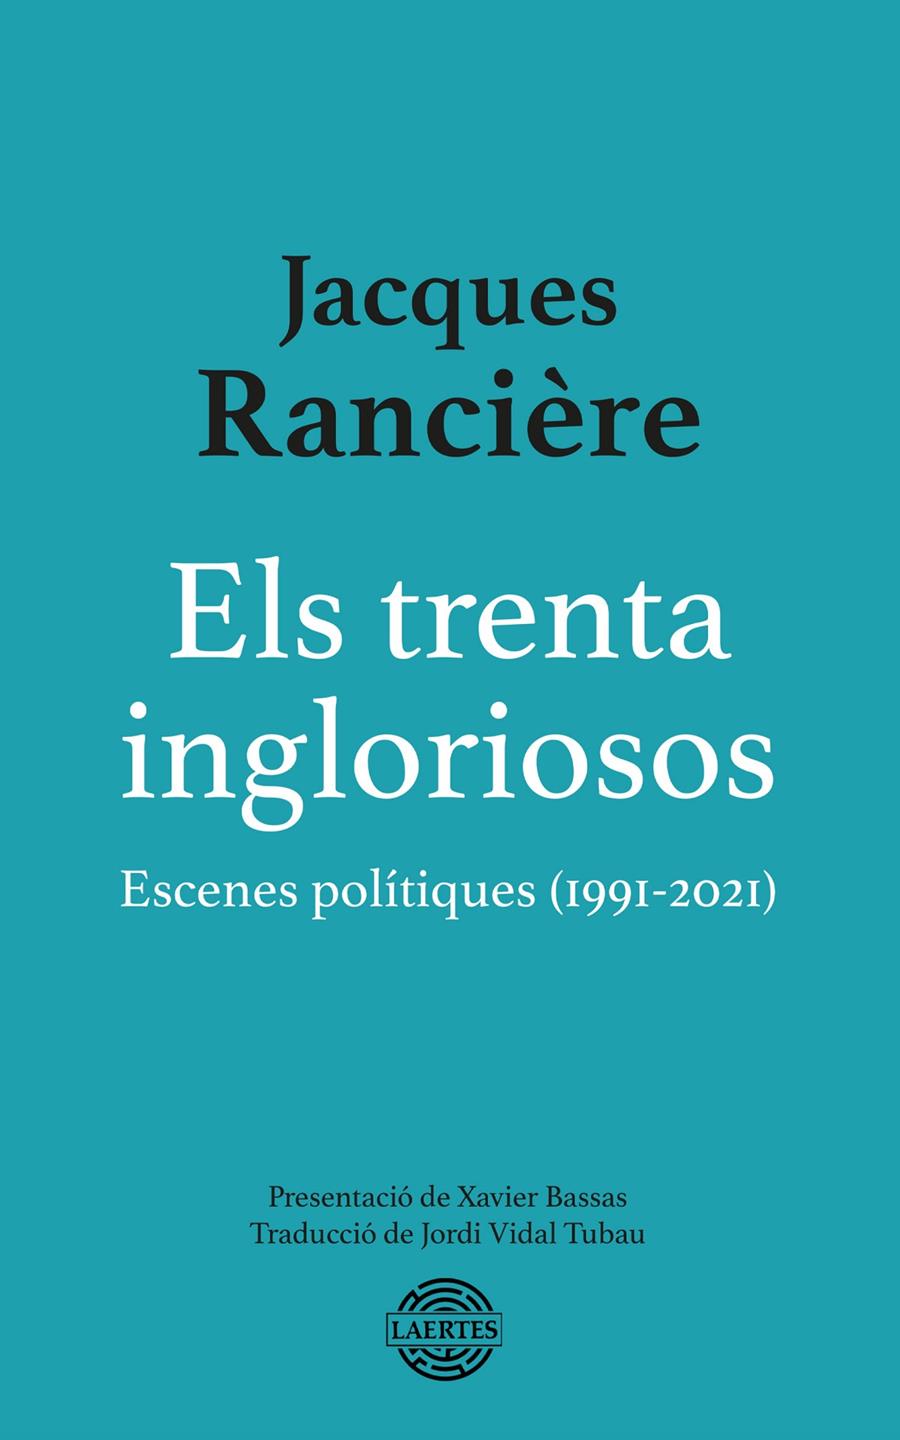 Els trenta ingloriosos | Rancière, Jacques | Cooperativa autogestionària